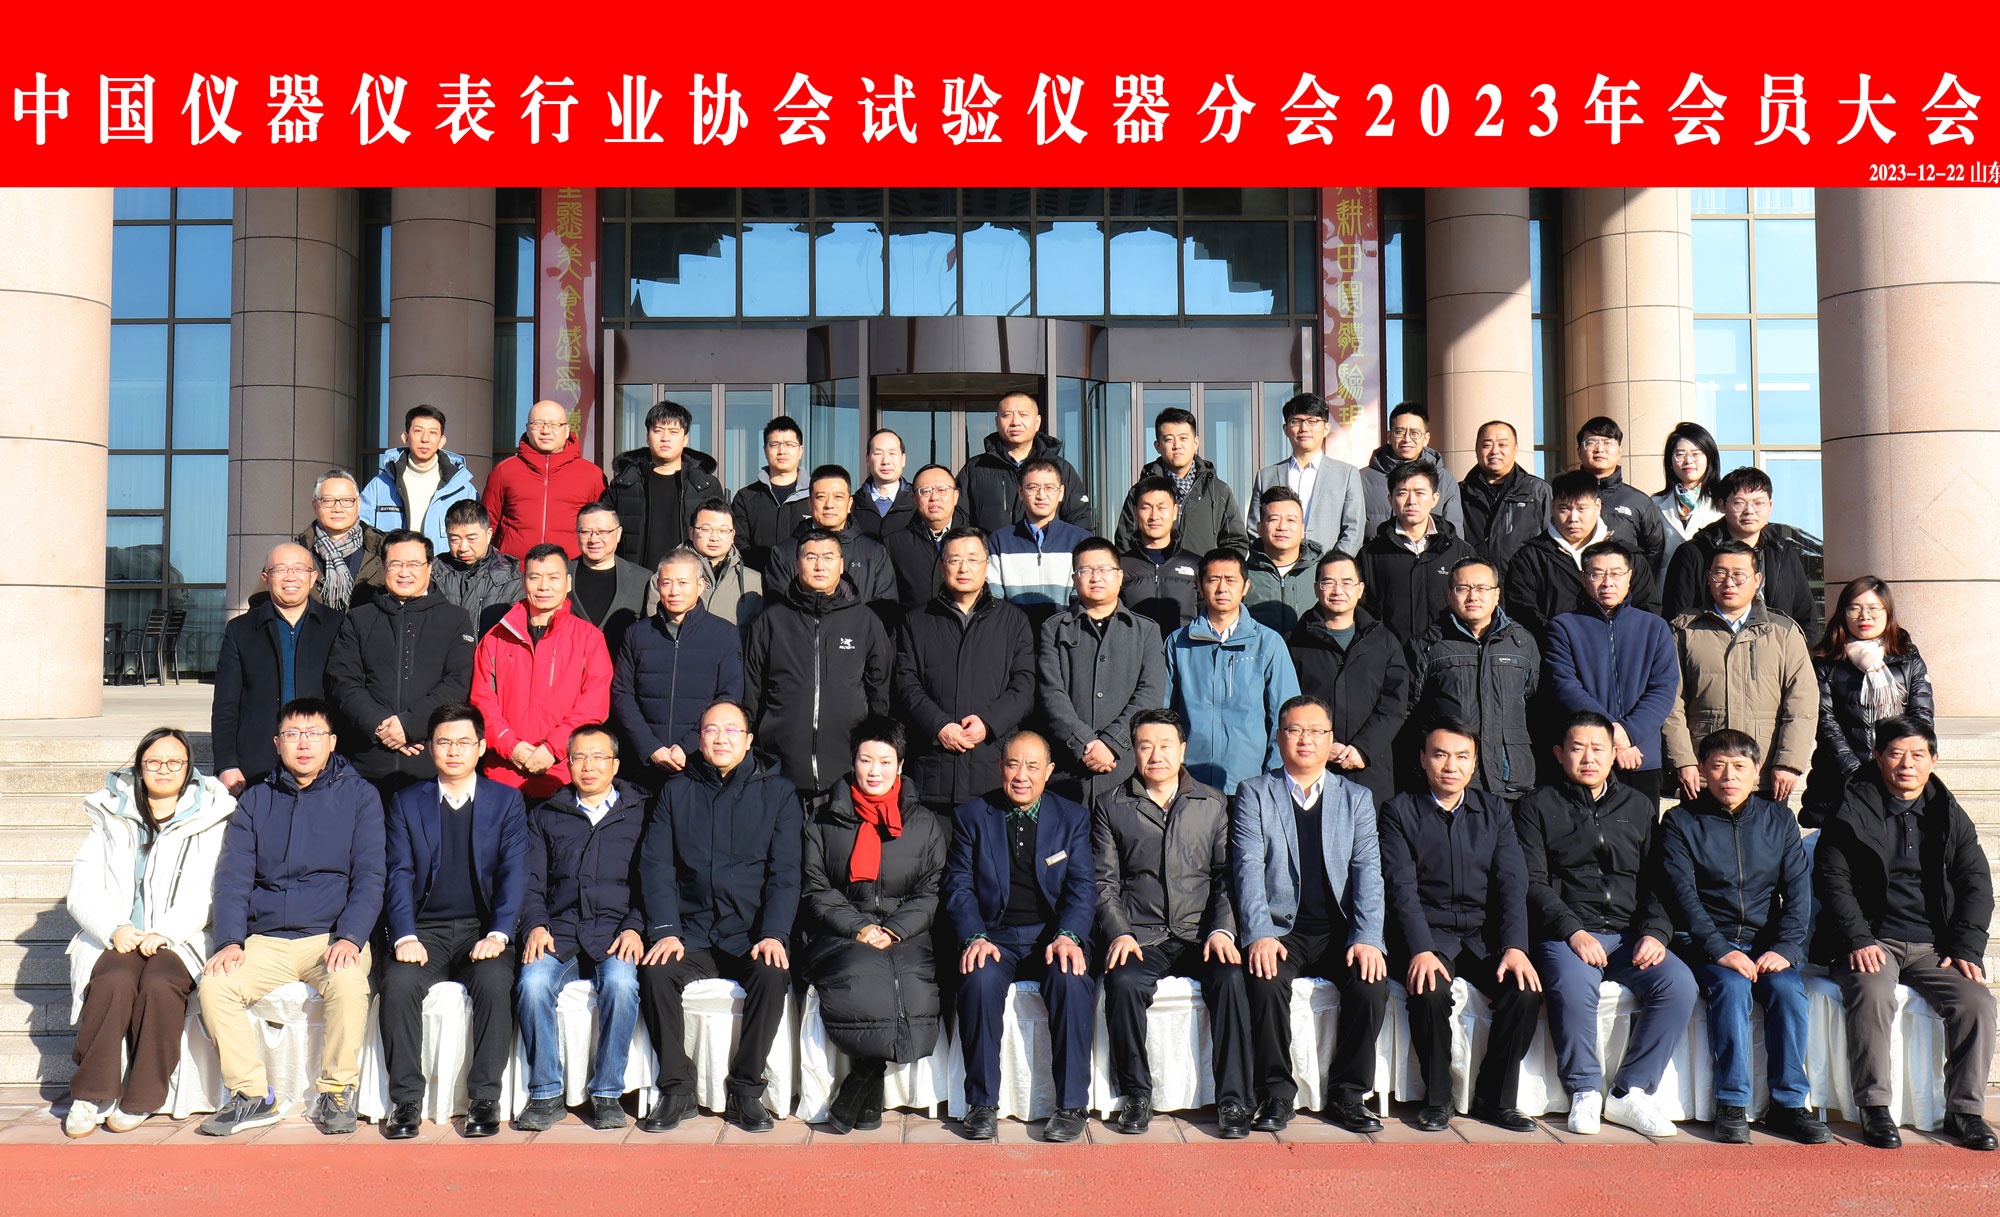 中国仪器仪表行业协会试验仪器分会2023年会员大会 顺利召开